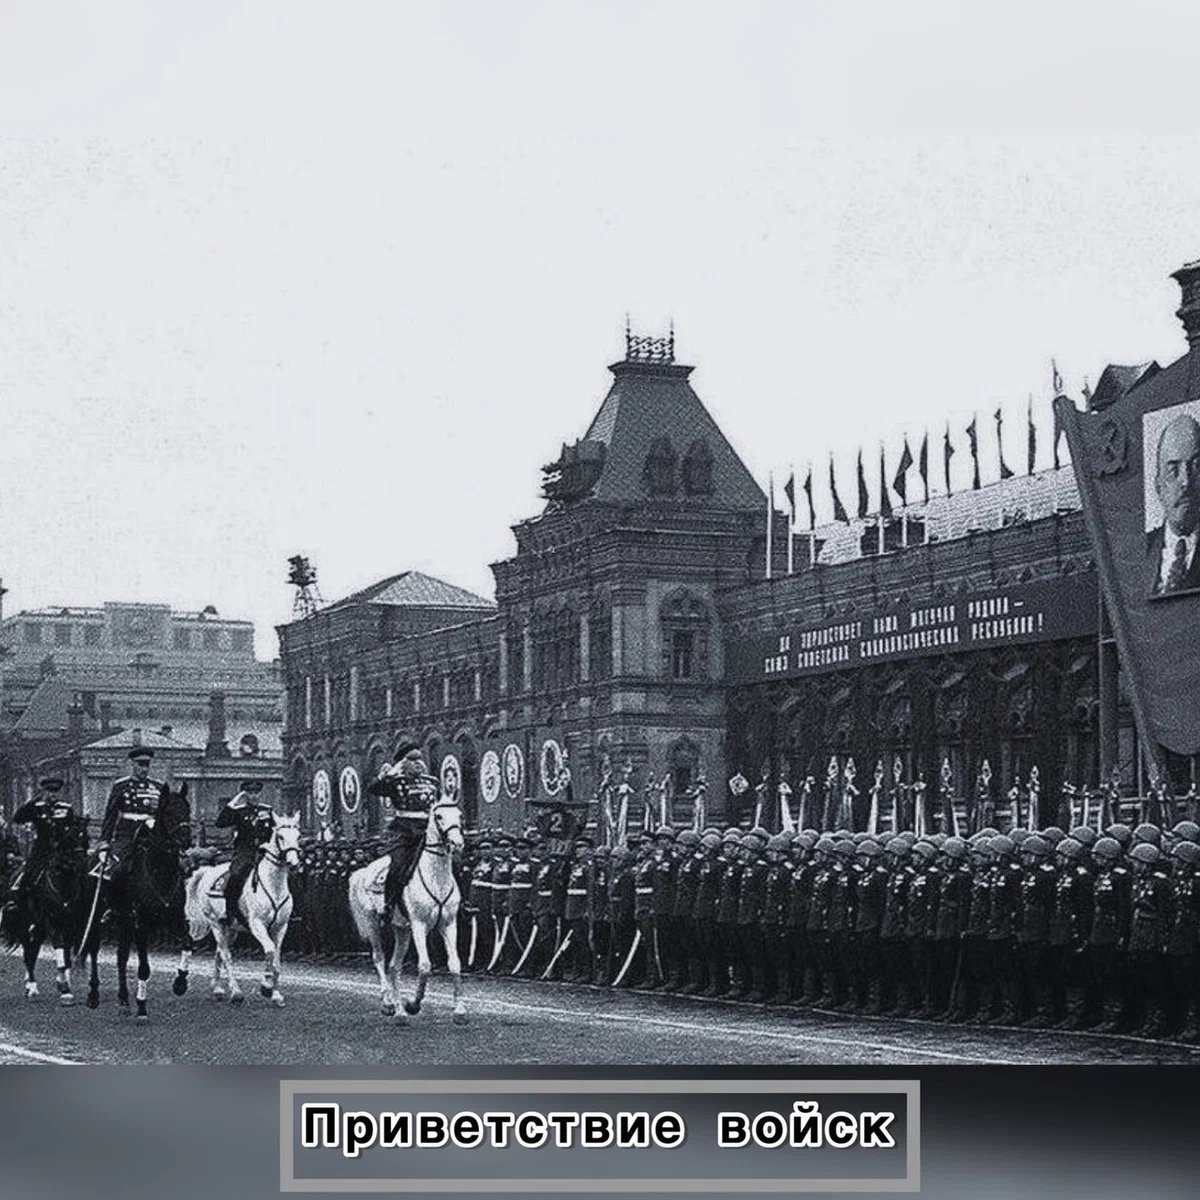 24 Июня 1945 г в Москве состоялся парад Победы